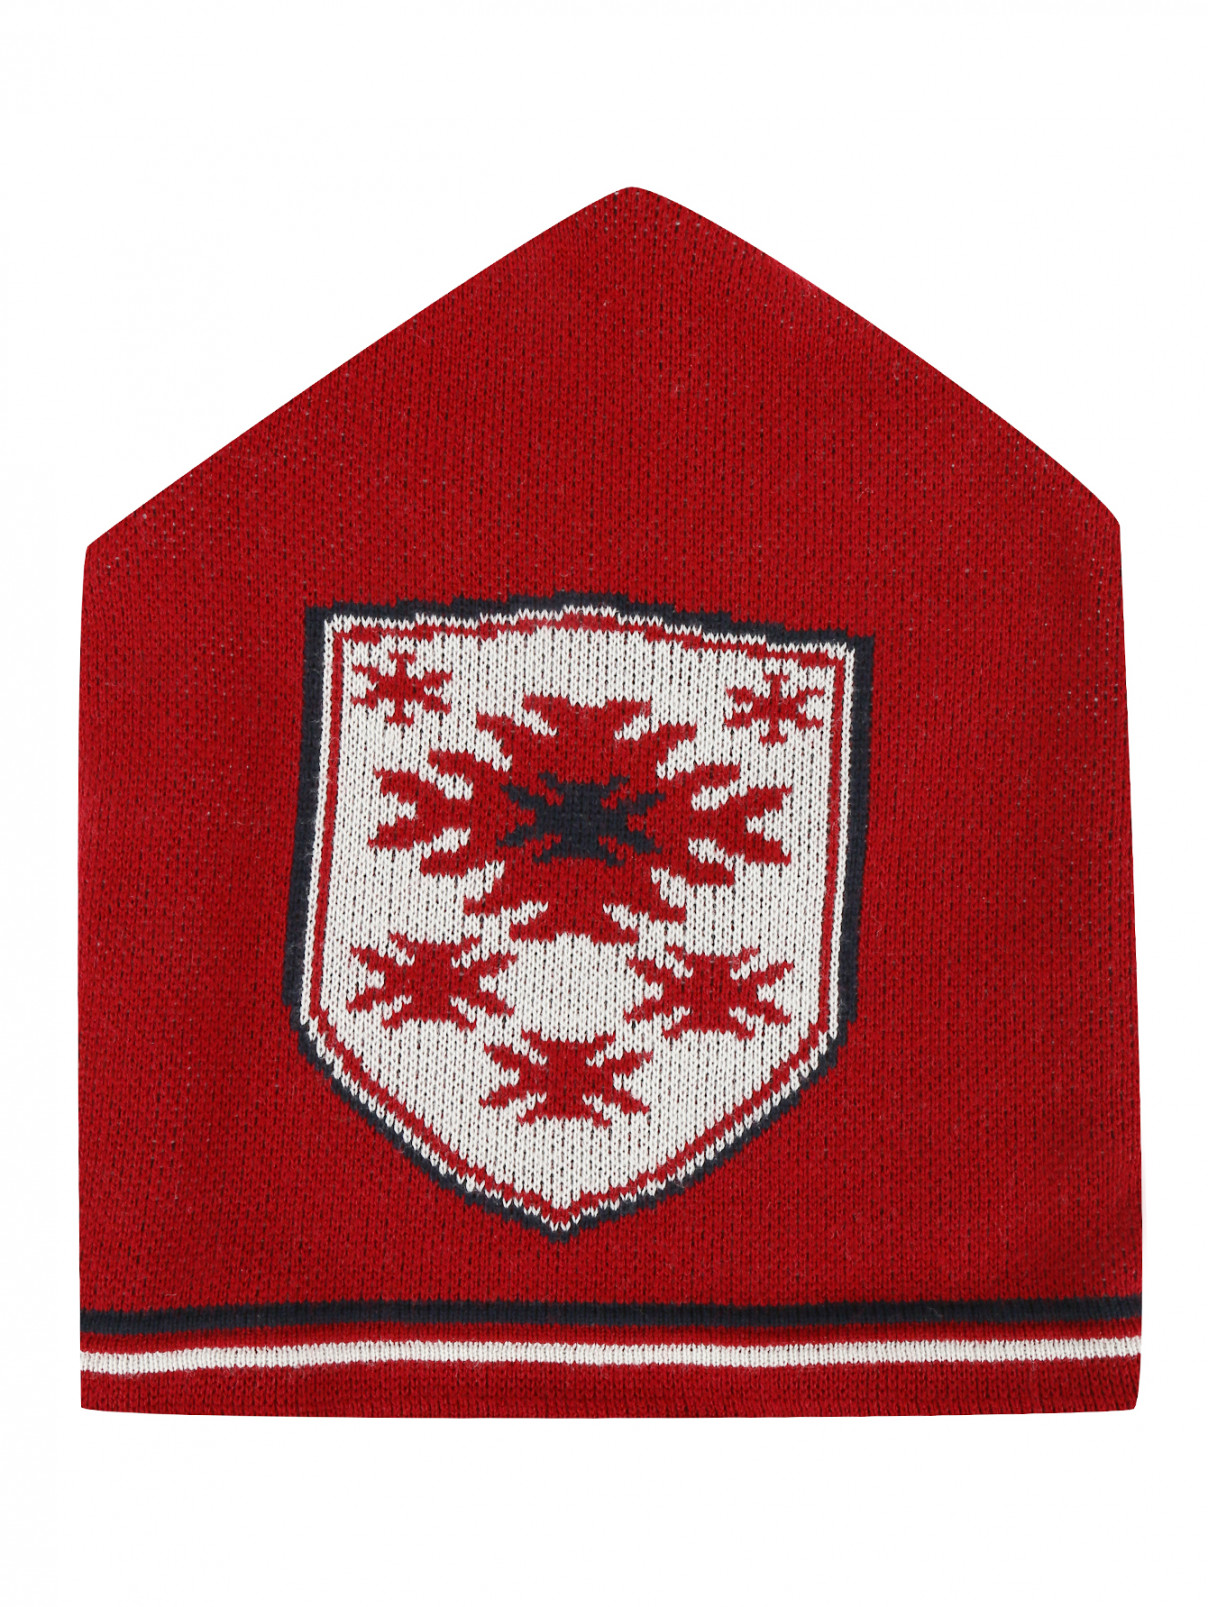 Трикотажная шапка с орнаментом BOSCO  –  Общий вид  – Цвет:  Красный